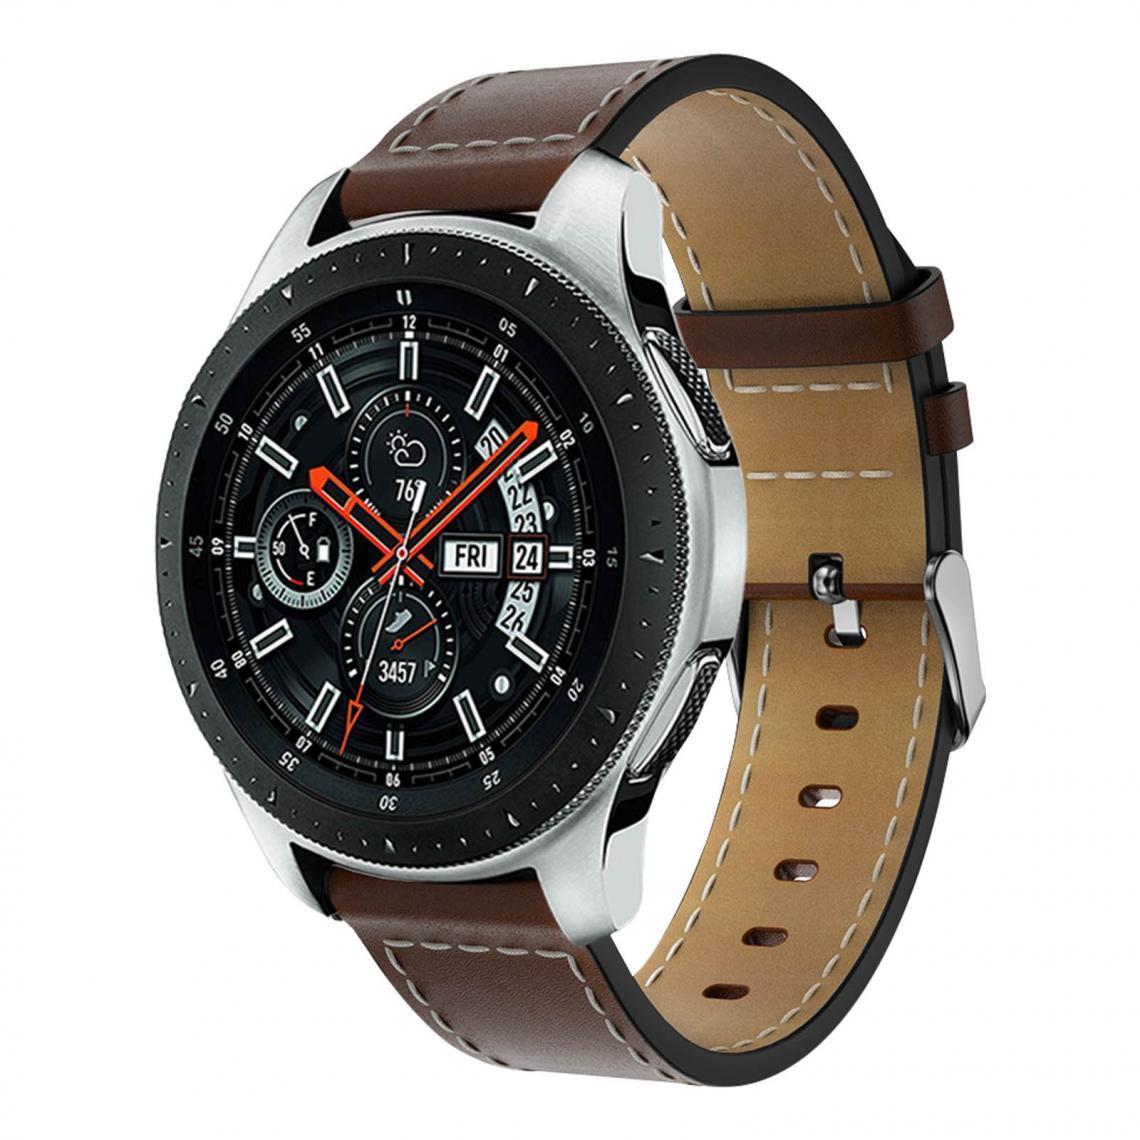 Avizar - Bracelet Samsung Galaxy Watch 46 mm cuir véritable lisse - marron - Accessoires montres connectées